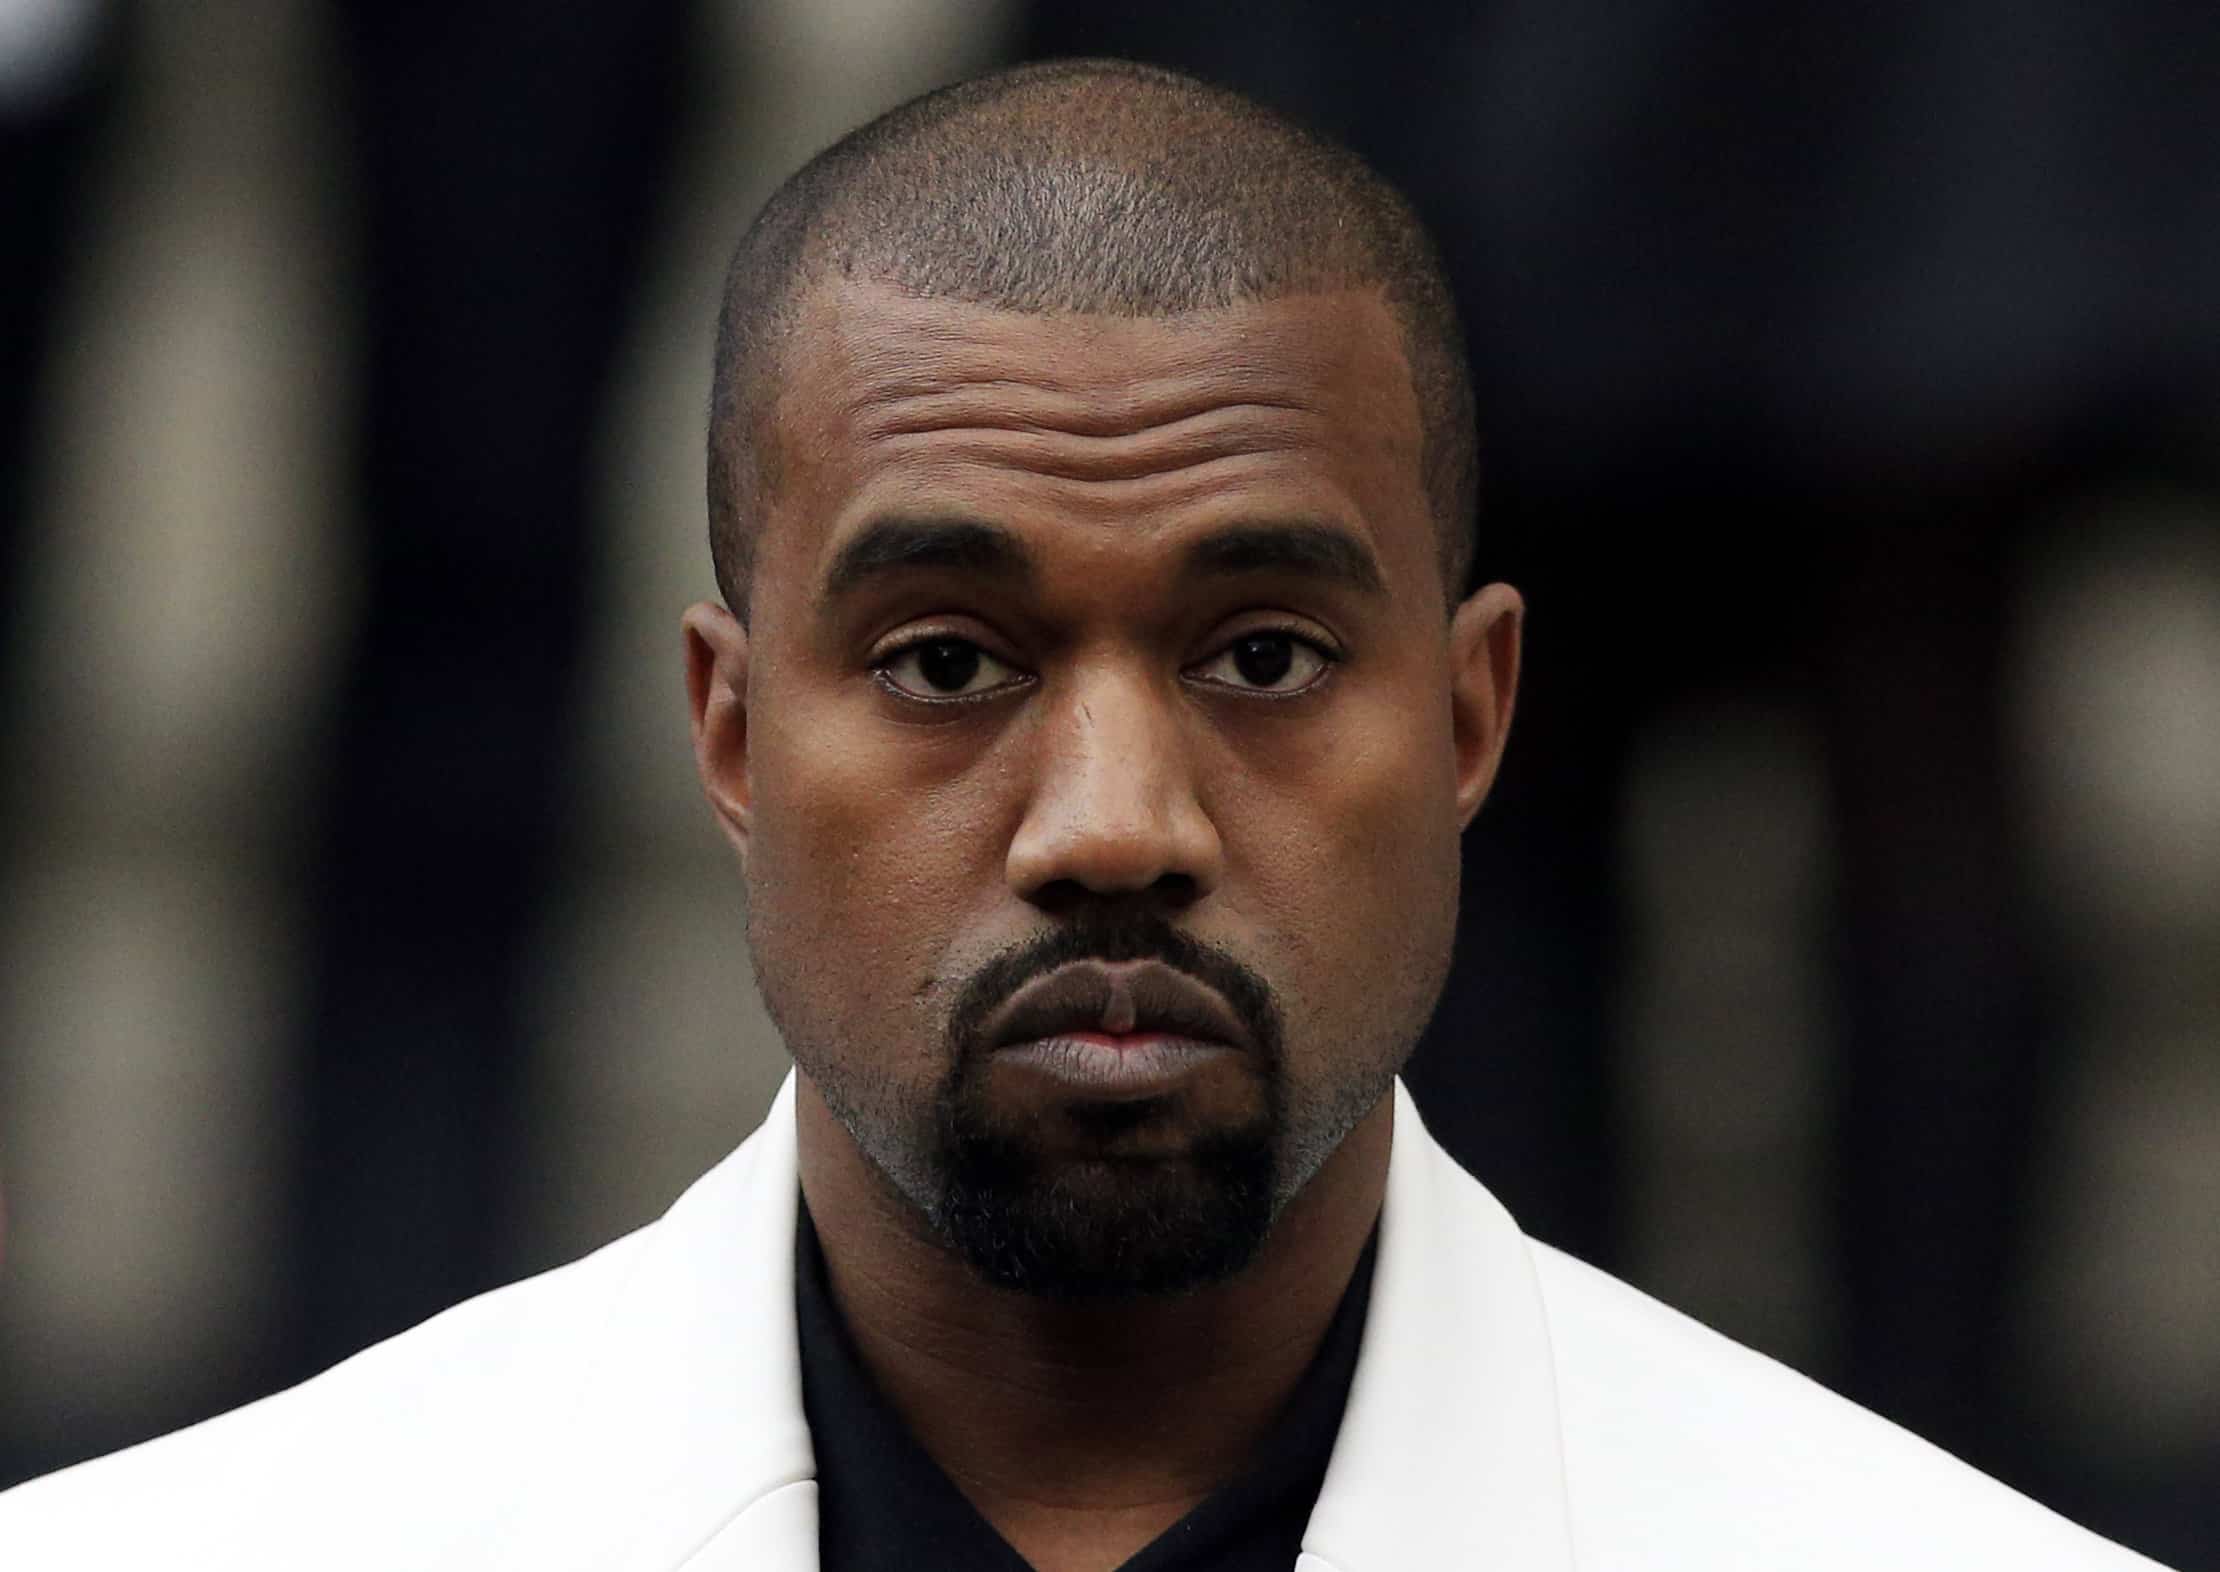 ‘You have gone too far’: Kanye West off Twitter after posting swastika inside Star of David